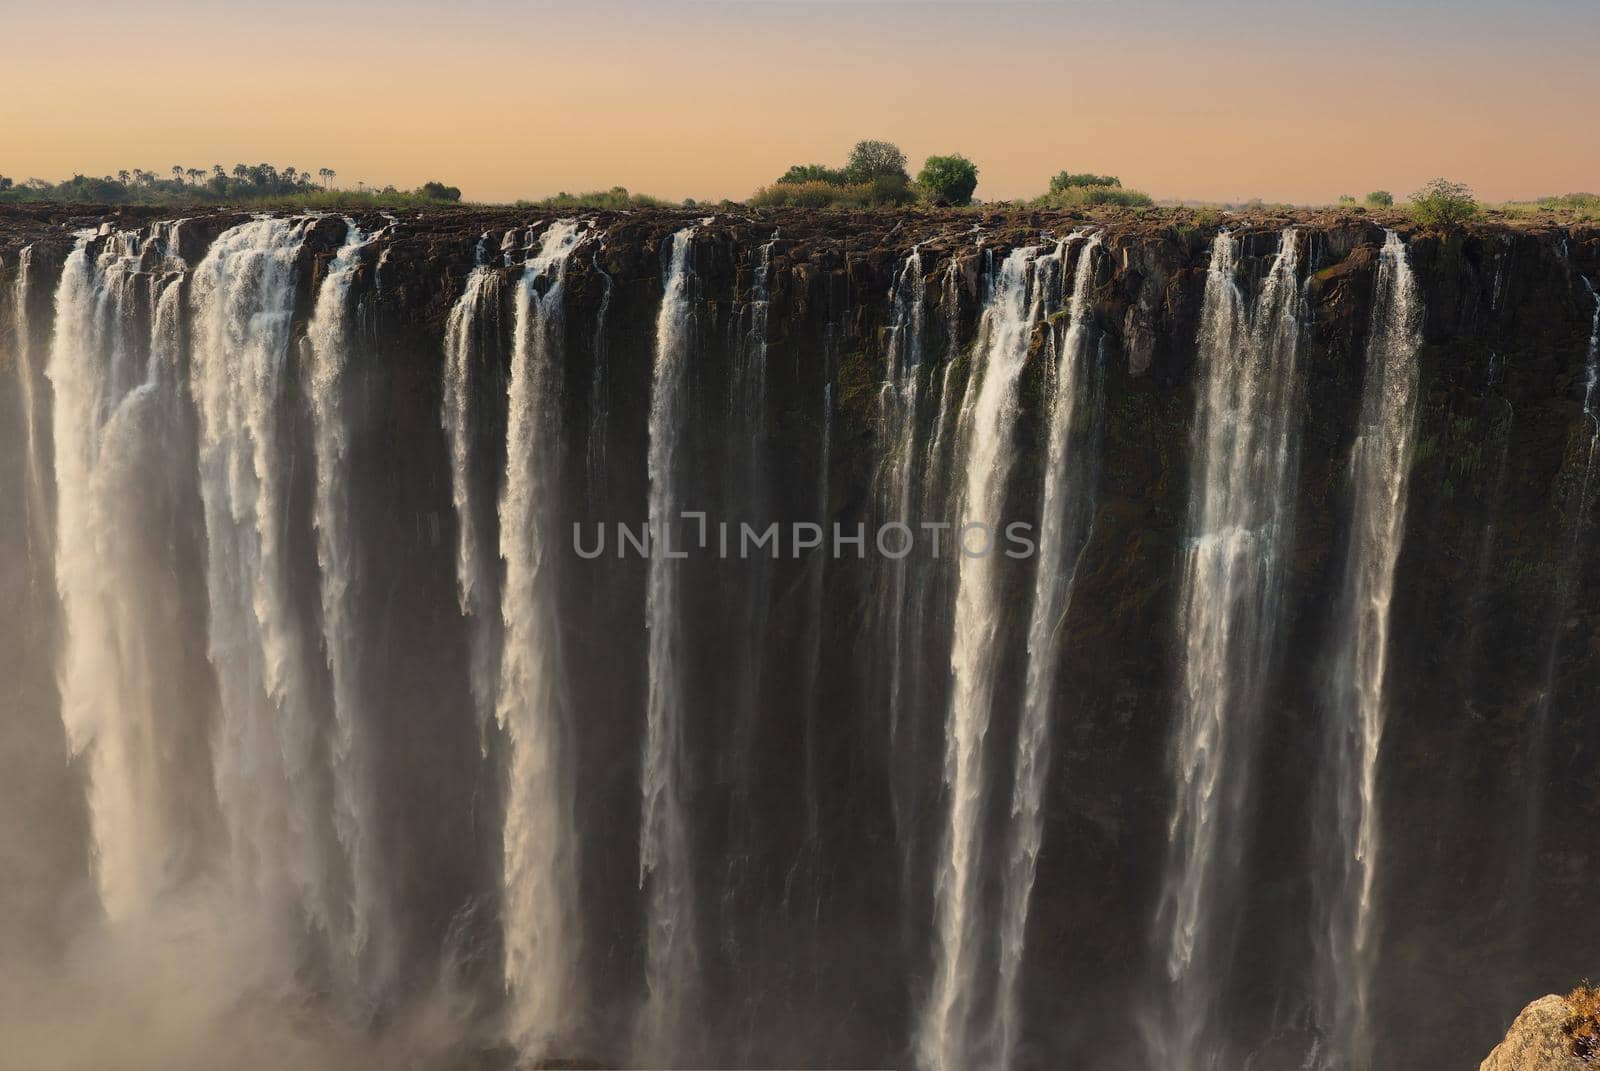 Victoria Falls on the Zambezi River between Zimbabwe and Zambia by fivepointsix